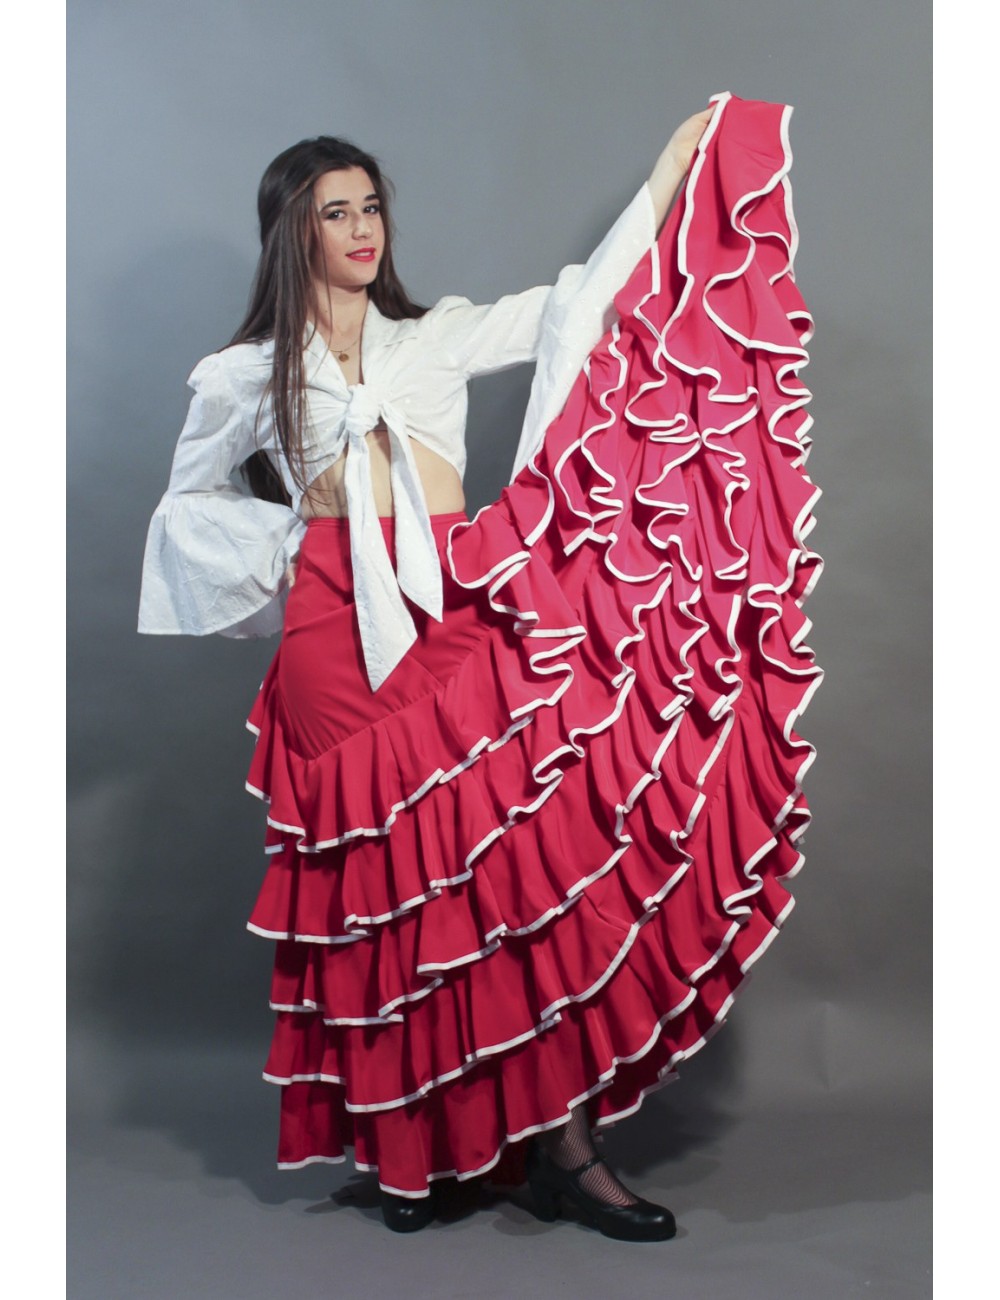 Jupe de flamenco rouge Sensation